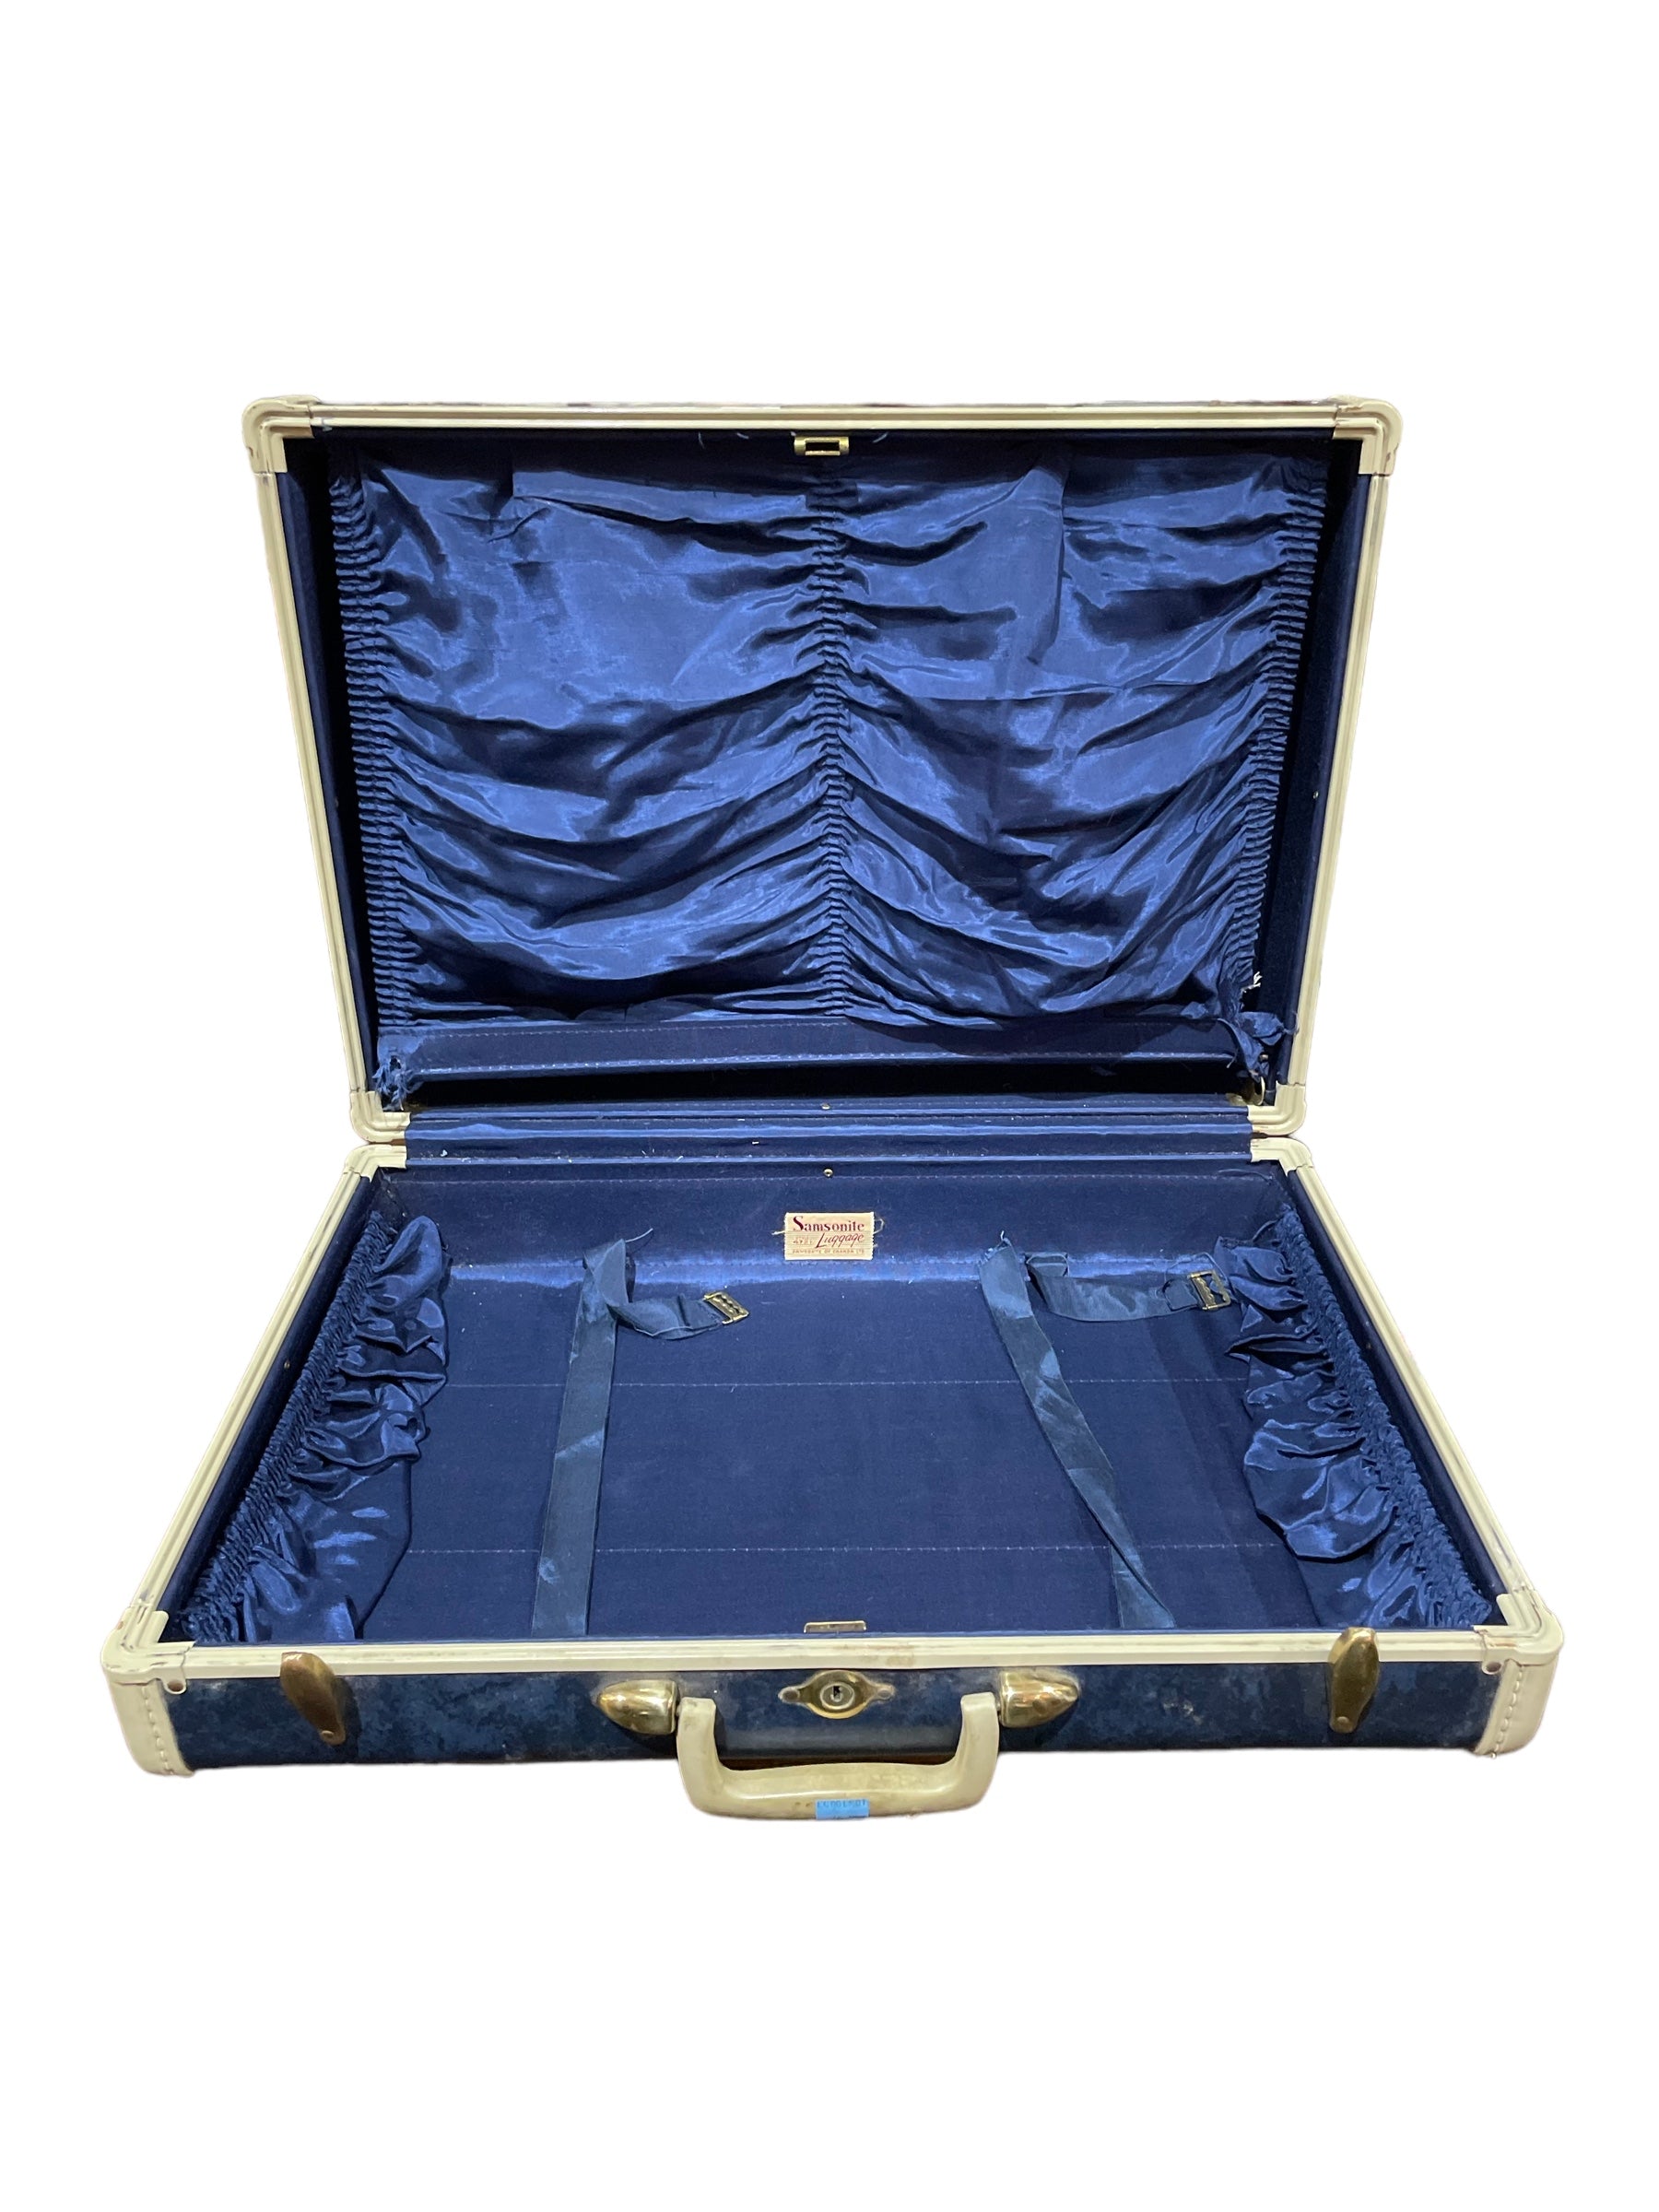 Vintage Samsonite Shwayder Bros 4721 Blue Suitcase